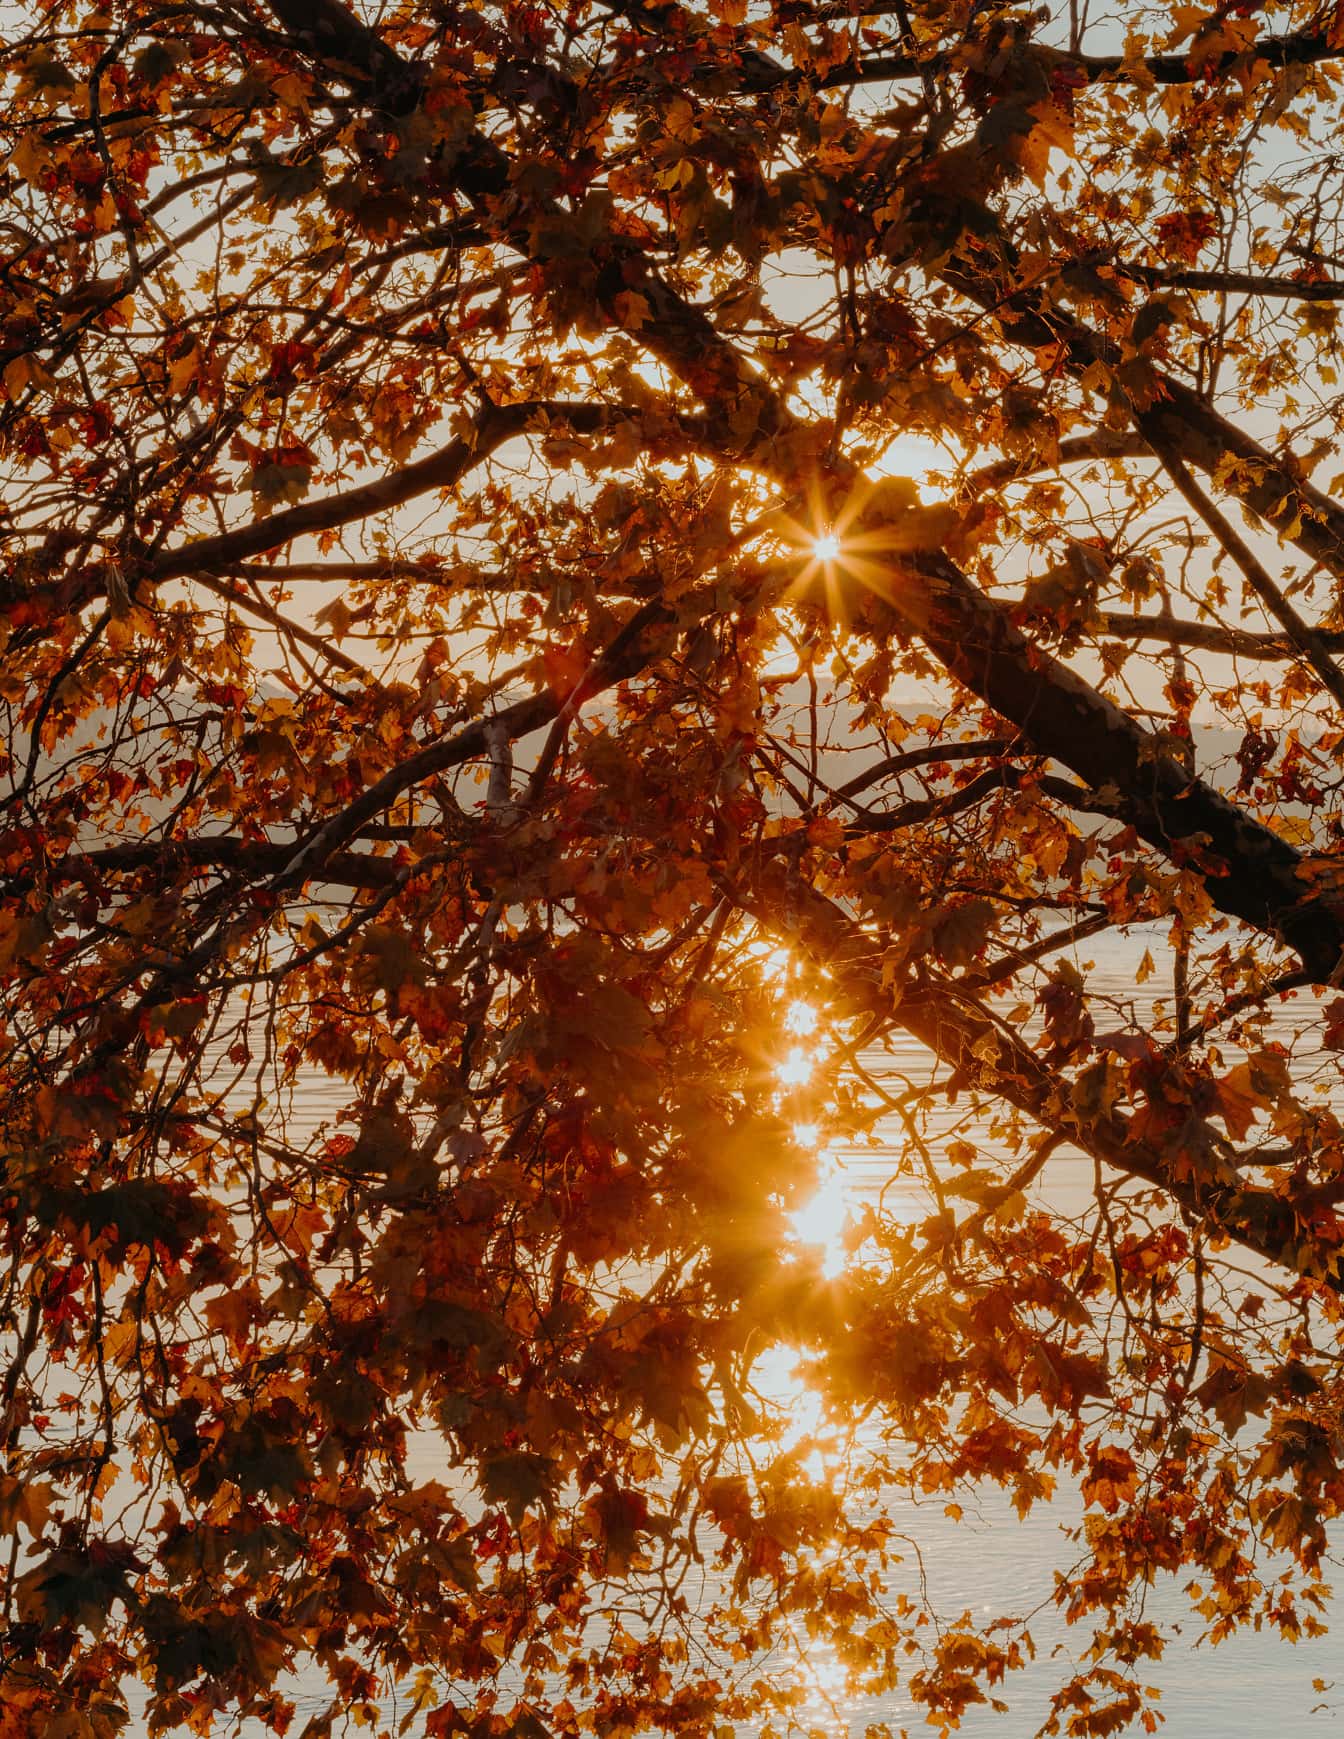 Pomarańczowo-żółte promienie słoneczne z żółtawobrązowymi liśćmi w sezonie jesiennym